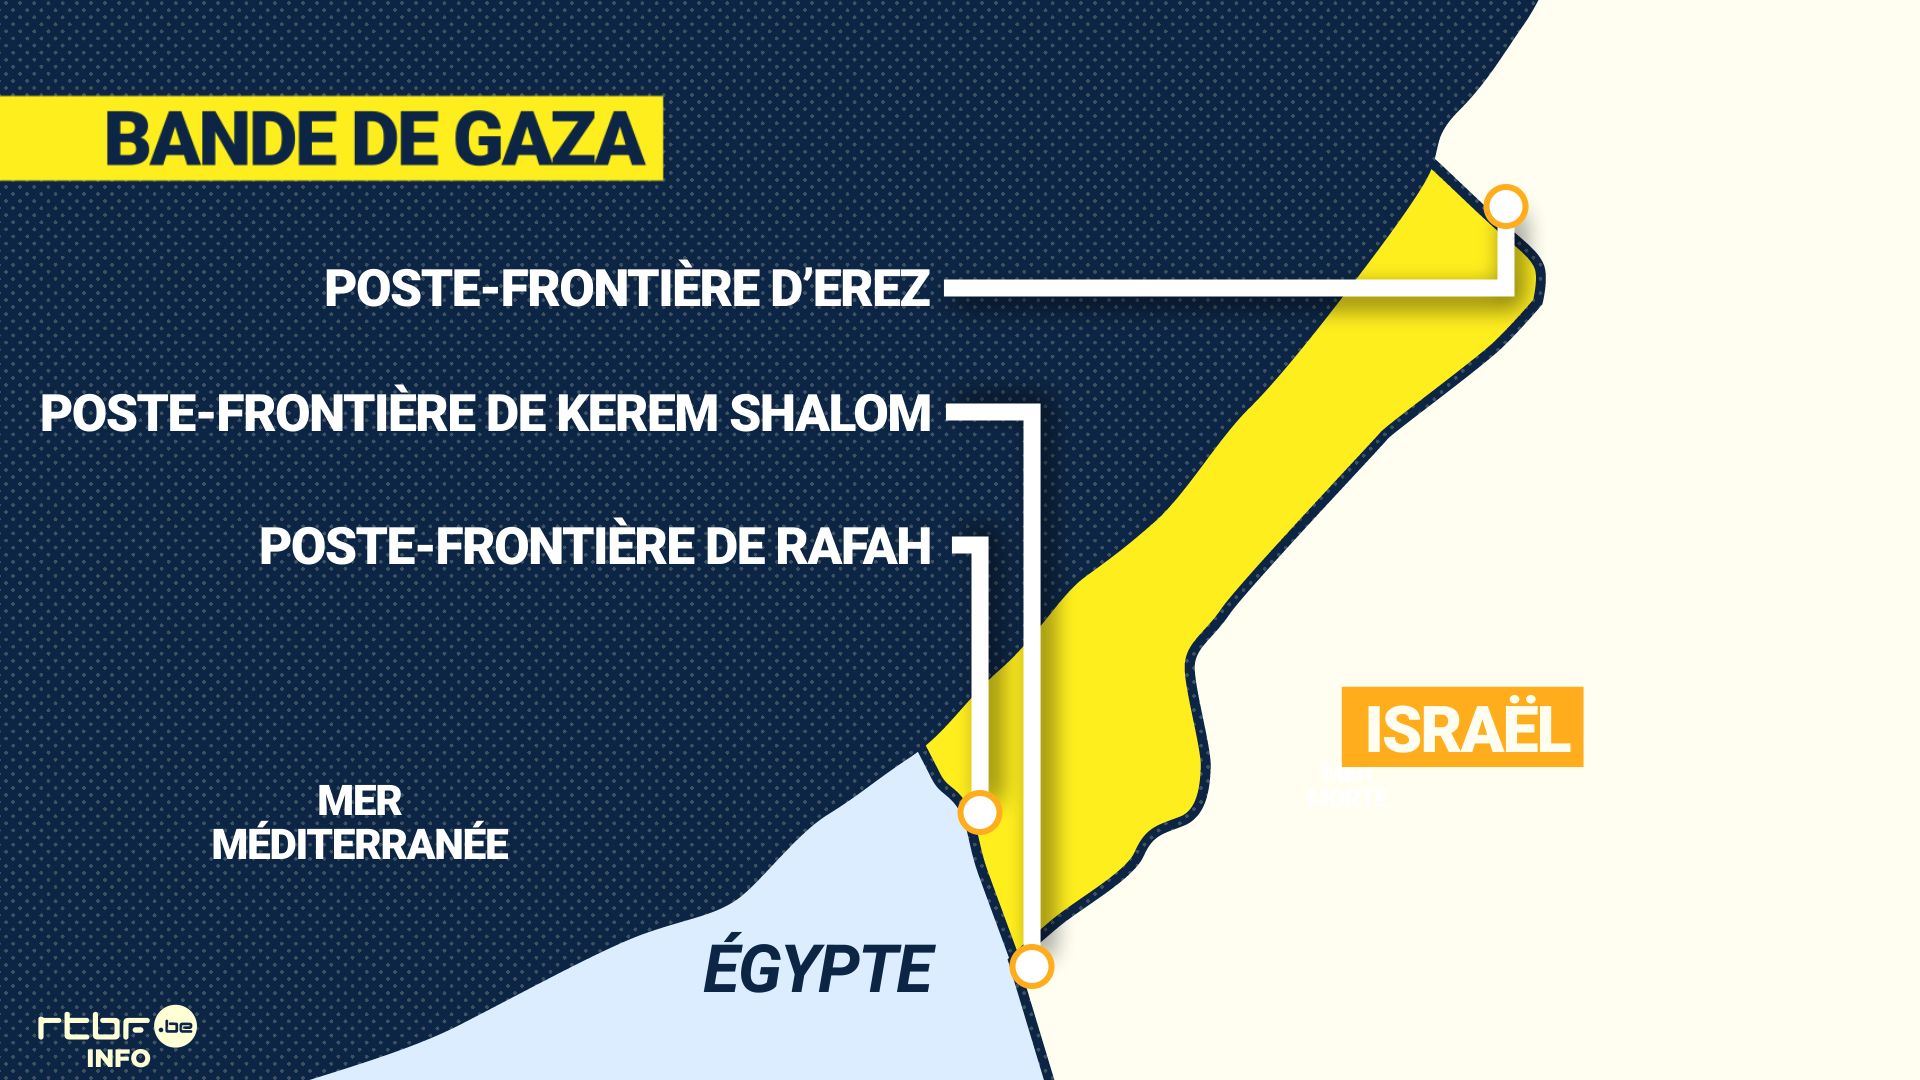 Israël contrôle tout ce qui rentre et sort de la Bande de Gaza. Il y a trois points de passage : Erez au nord, Kerem Shalom au sud et le poste-frontière de Rafah qui se situe entre l’Egypte et la Bande Gaza.